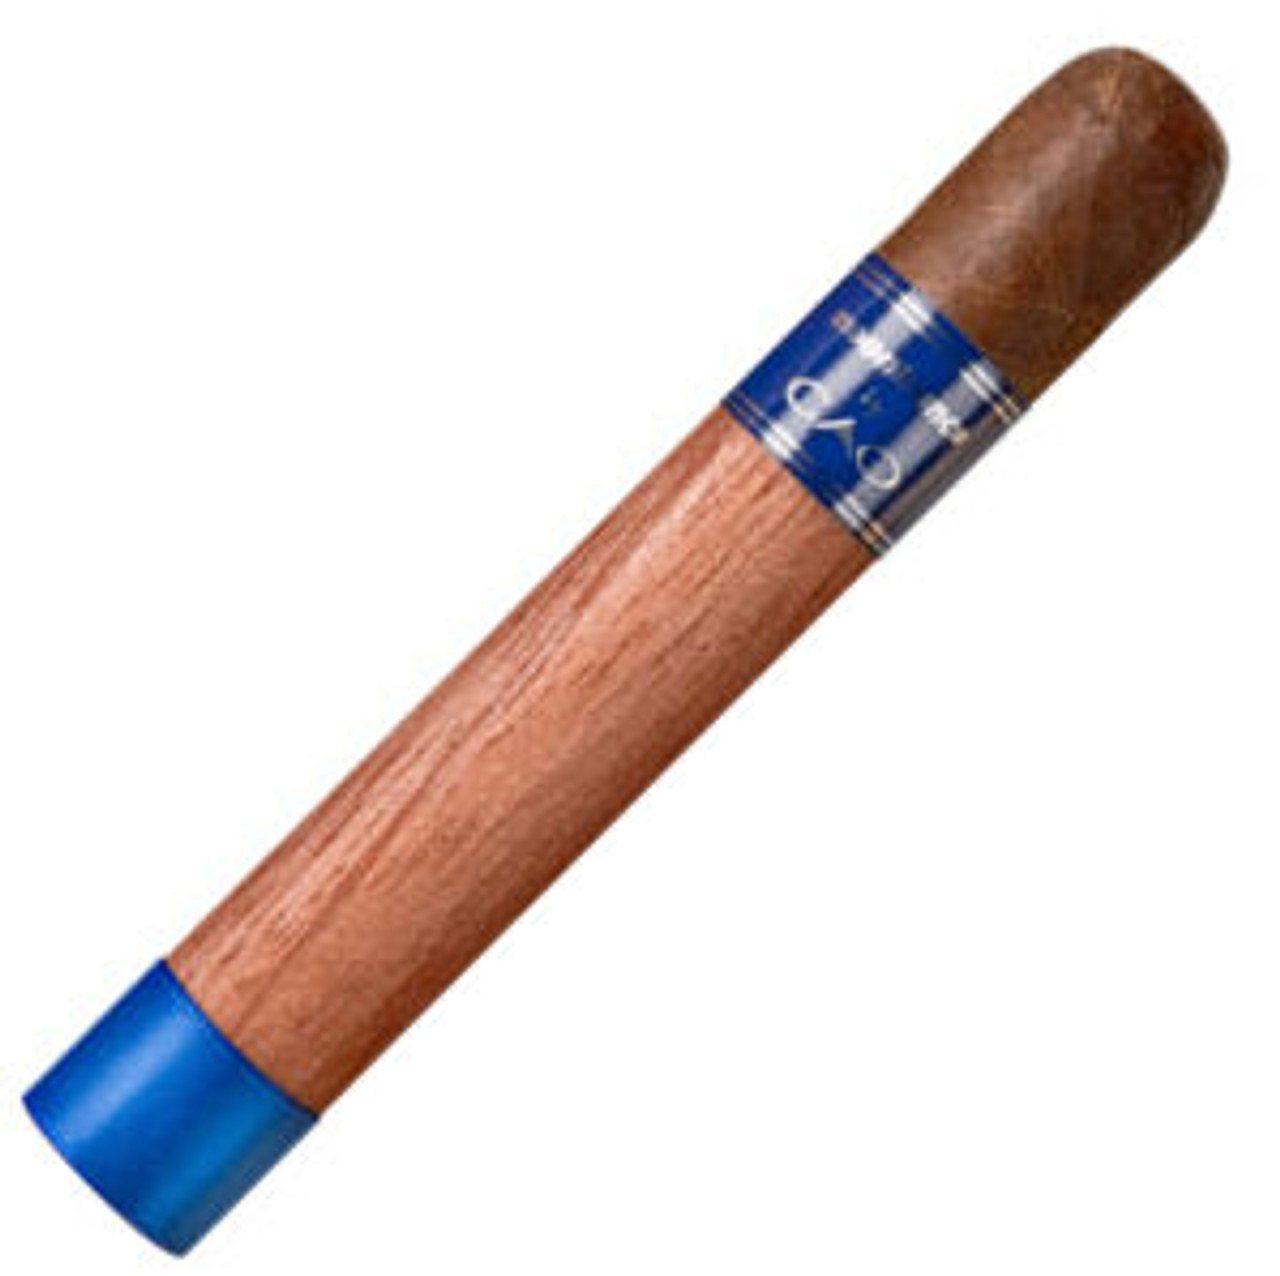 CAO Moontrance Robusto Cigars - 5 x 48 Single